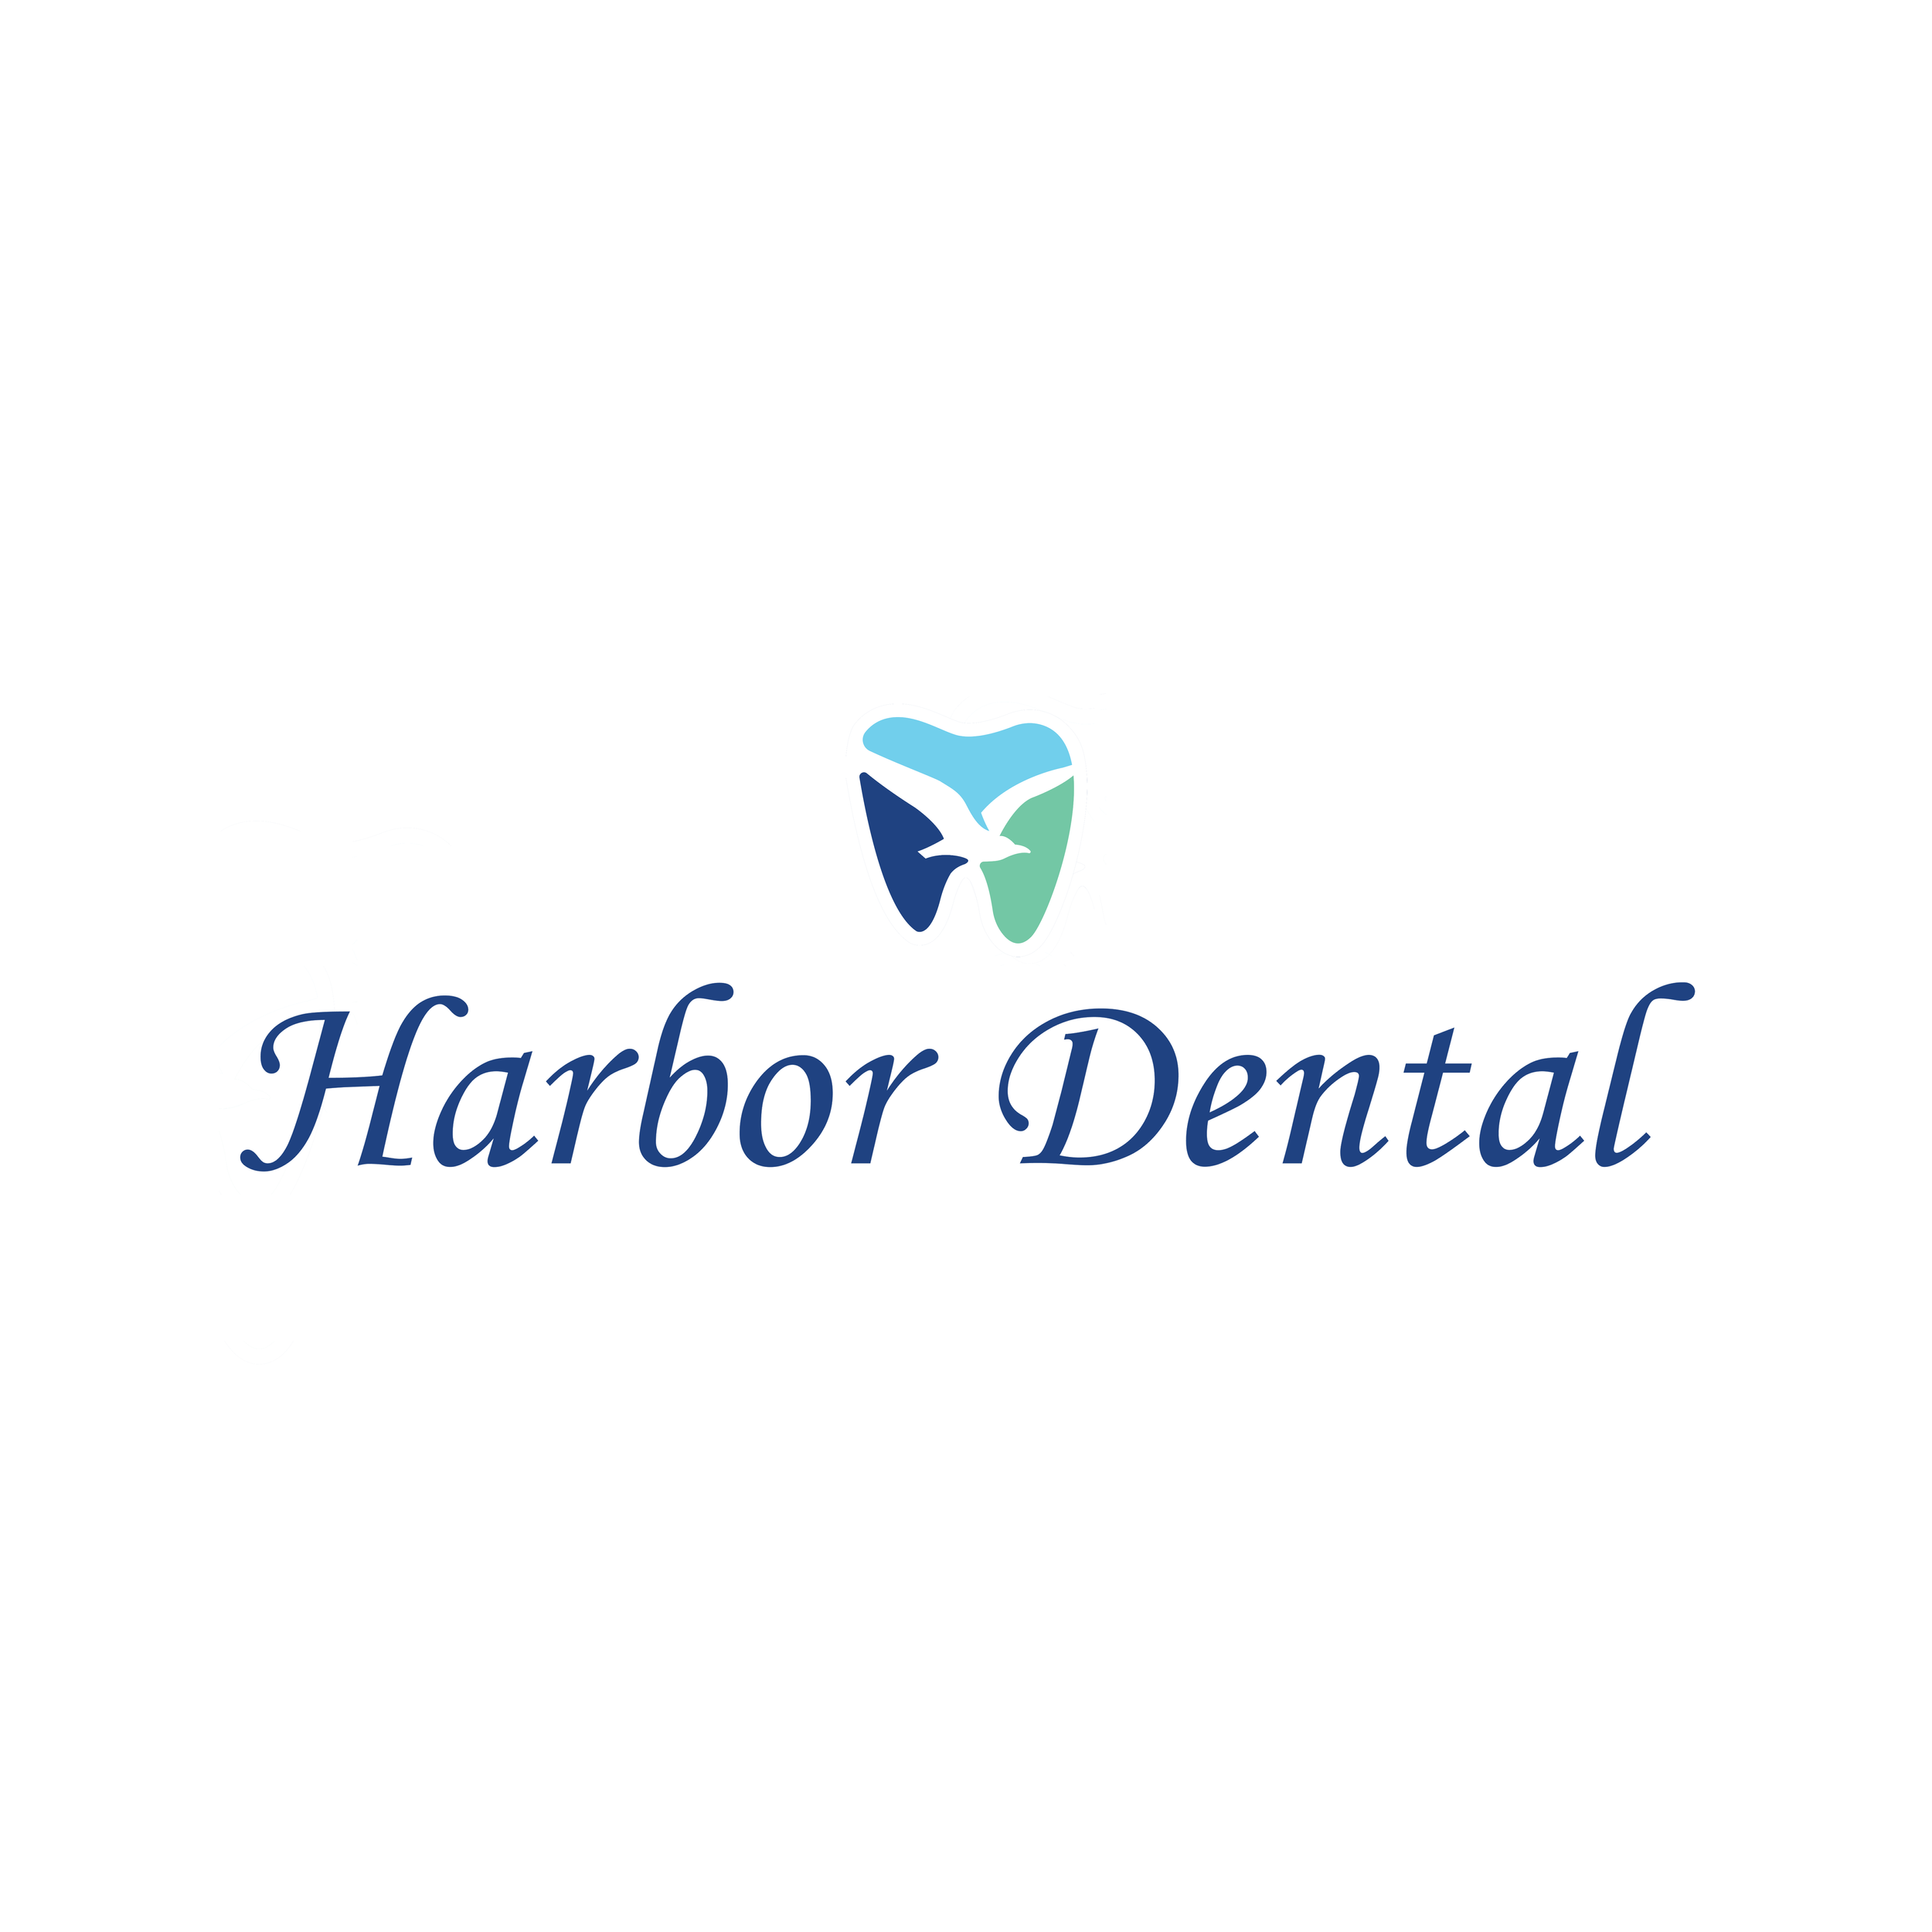 Harbor Dental.png